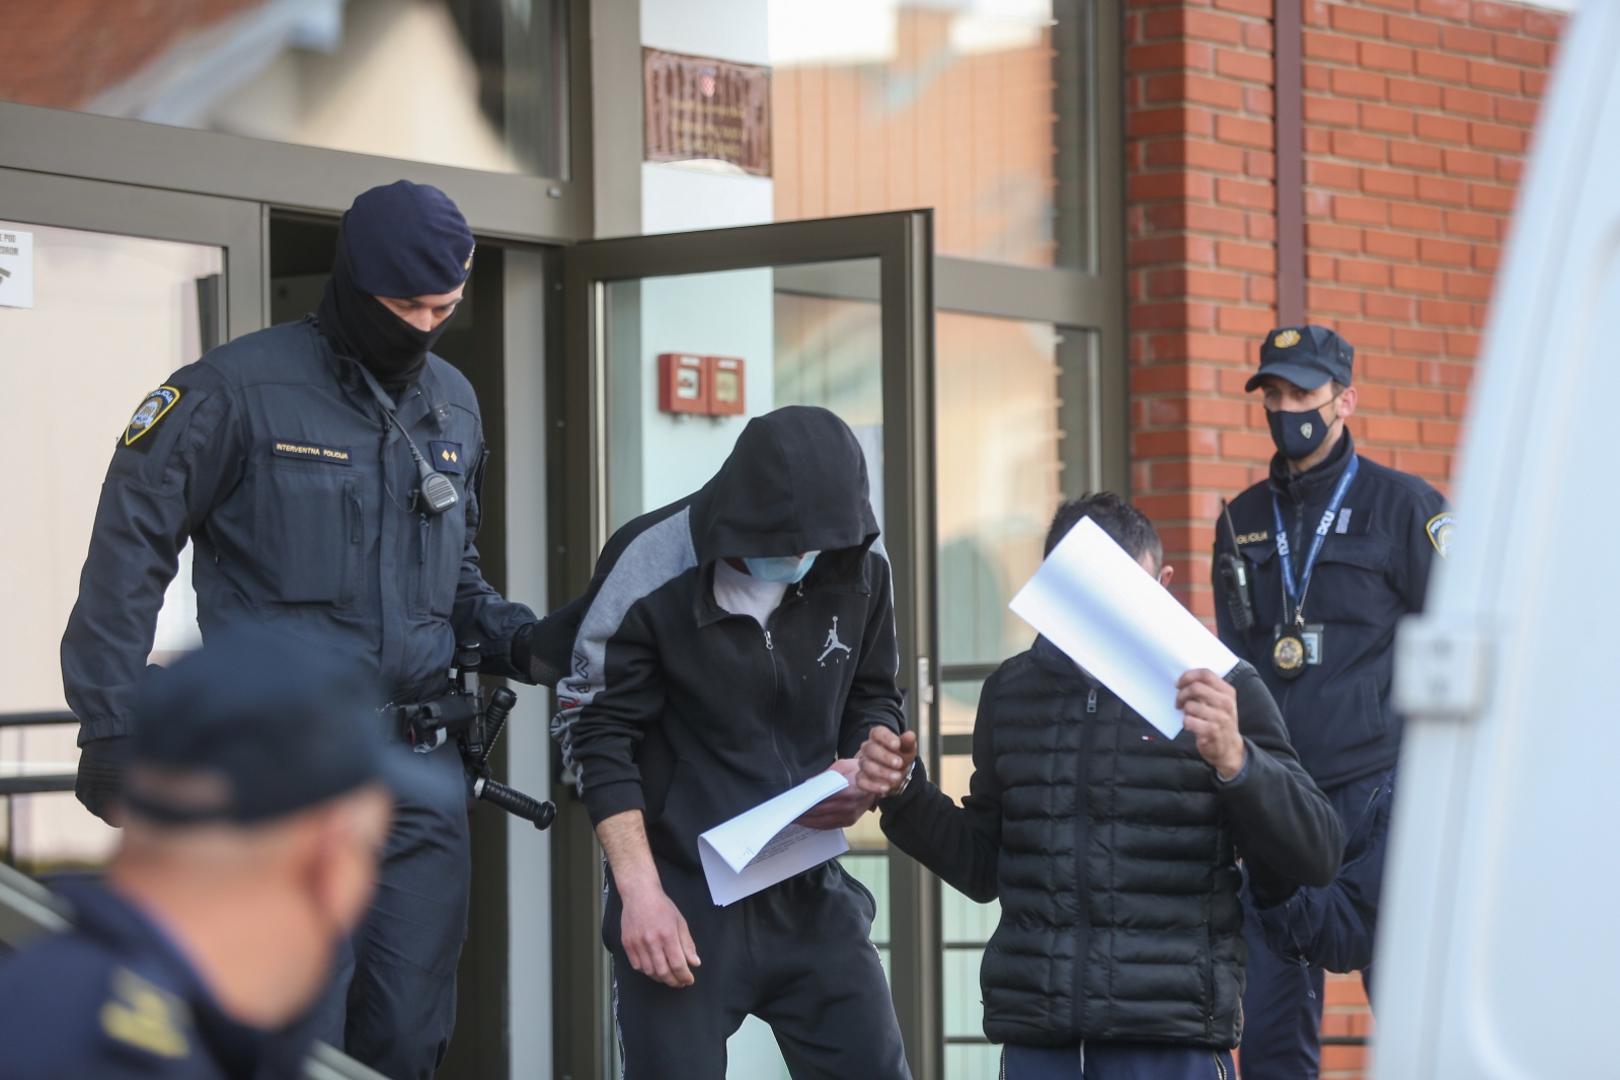 15.04.2021., Velika Gorica - Policija je u Zapresicu uhitila više osoba povezanih s proizvodnjom i preprodajom droge koji su dovedeni na Zupanijski sud u Velikoj Gorici. Photo: Zeljko Lukunic/PIXSELL